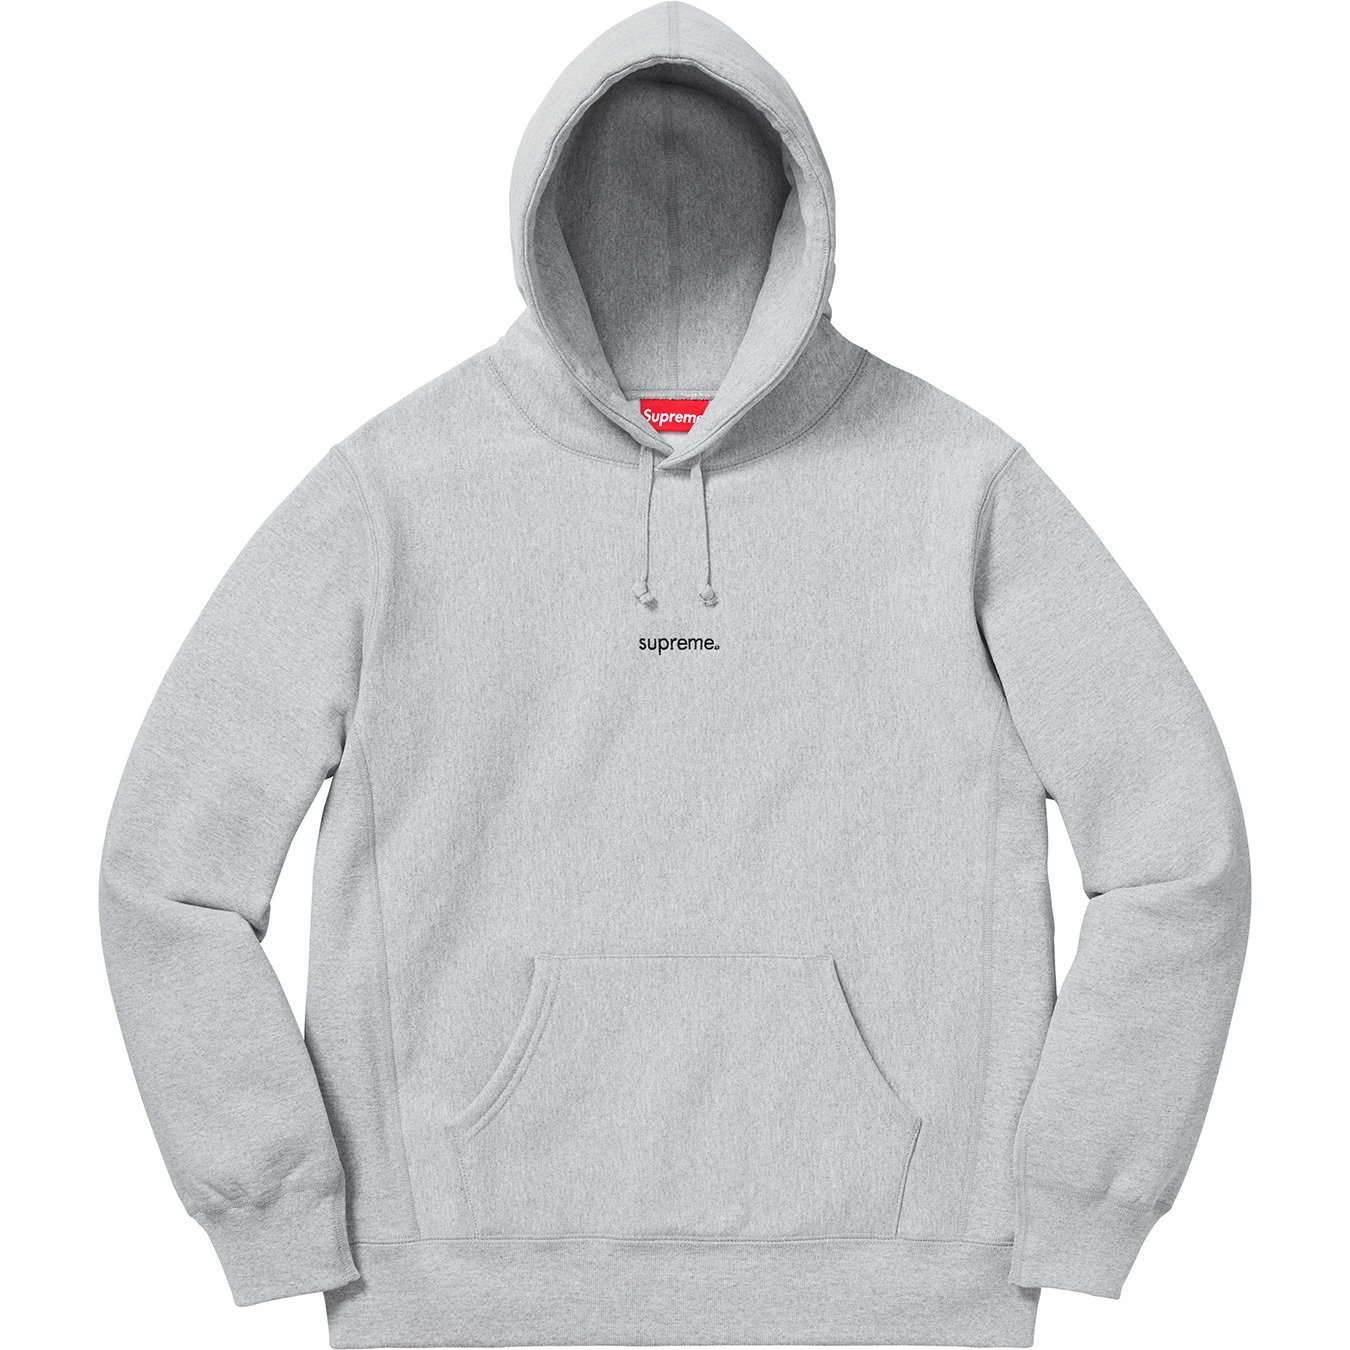 Supreme Trademark Hooded Sweatshirt-